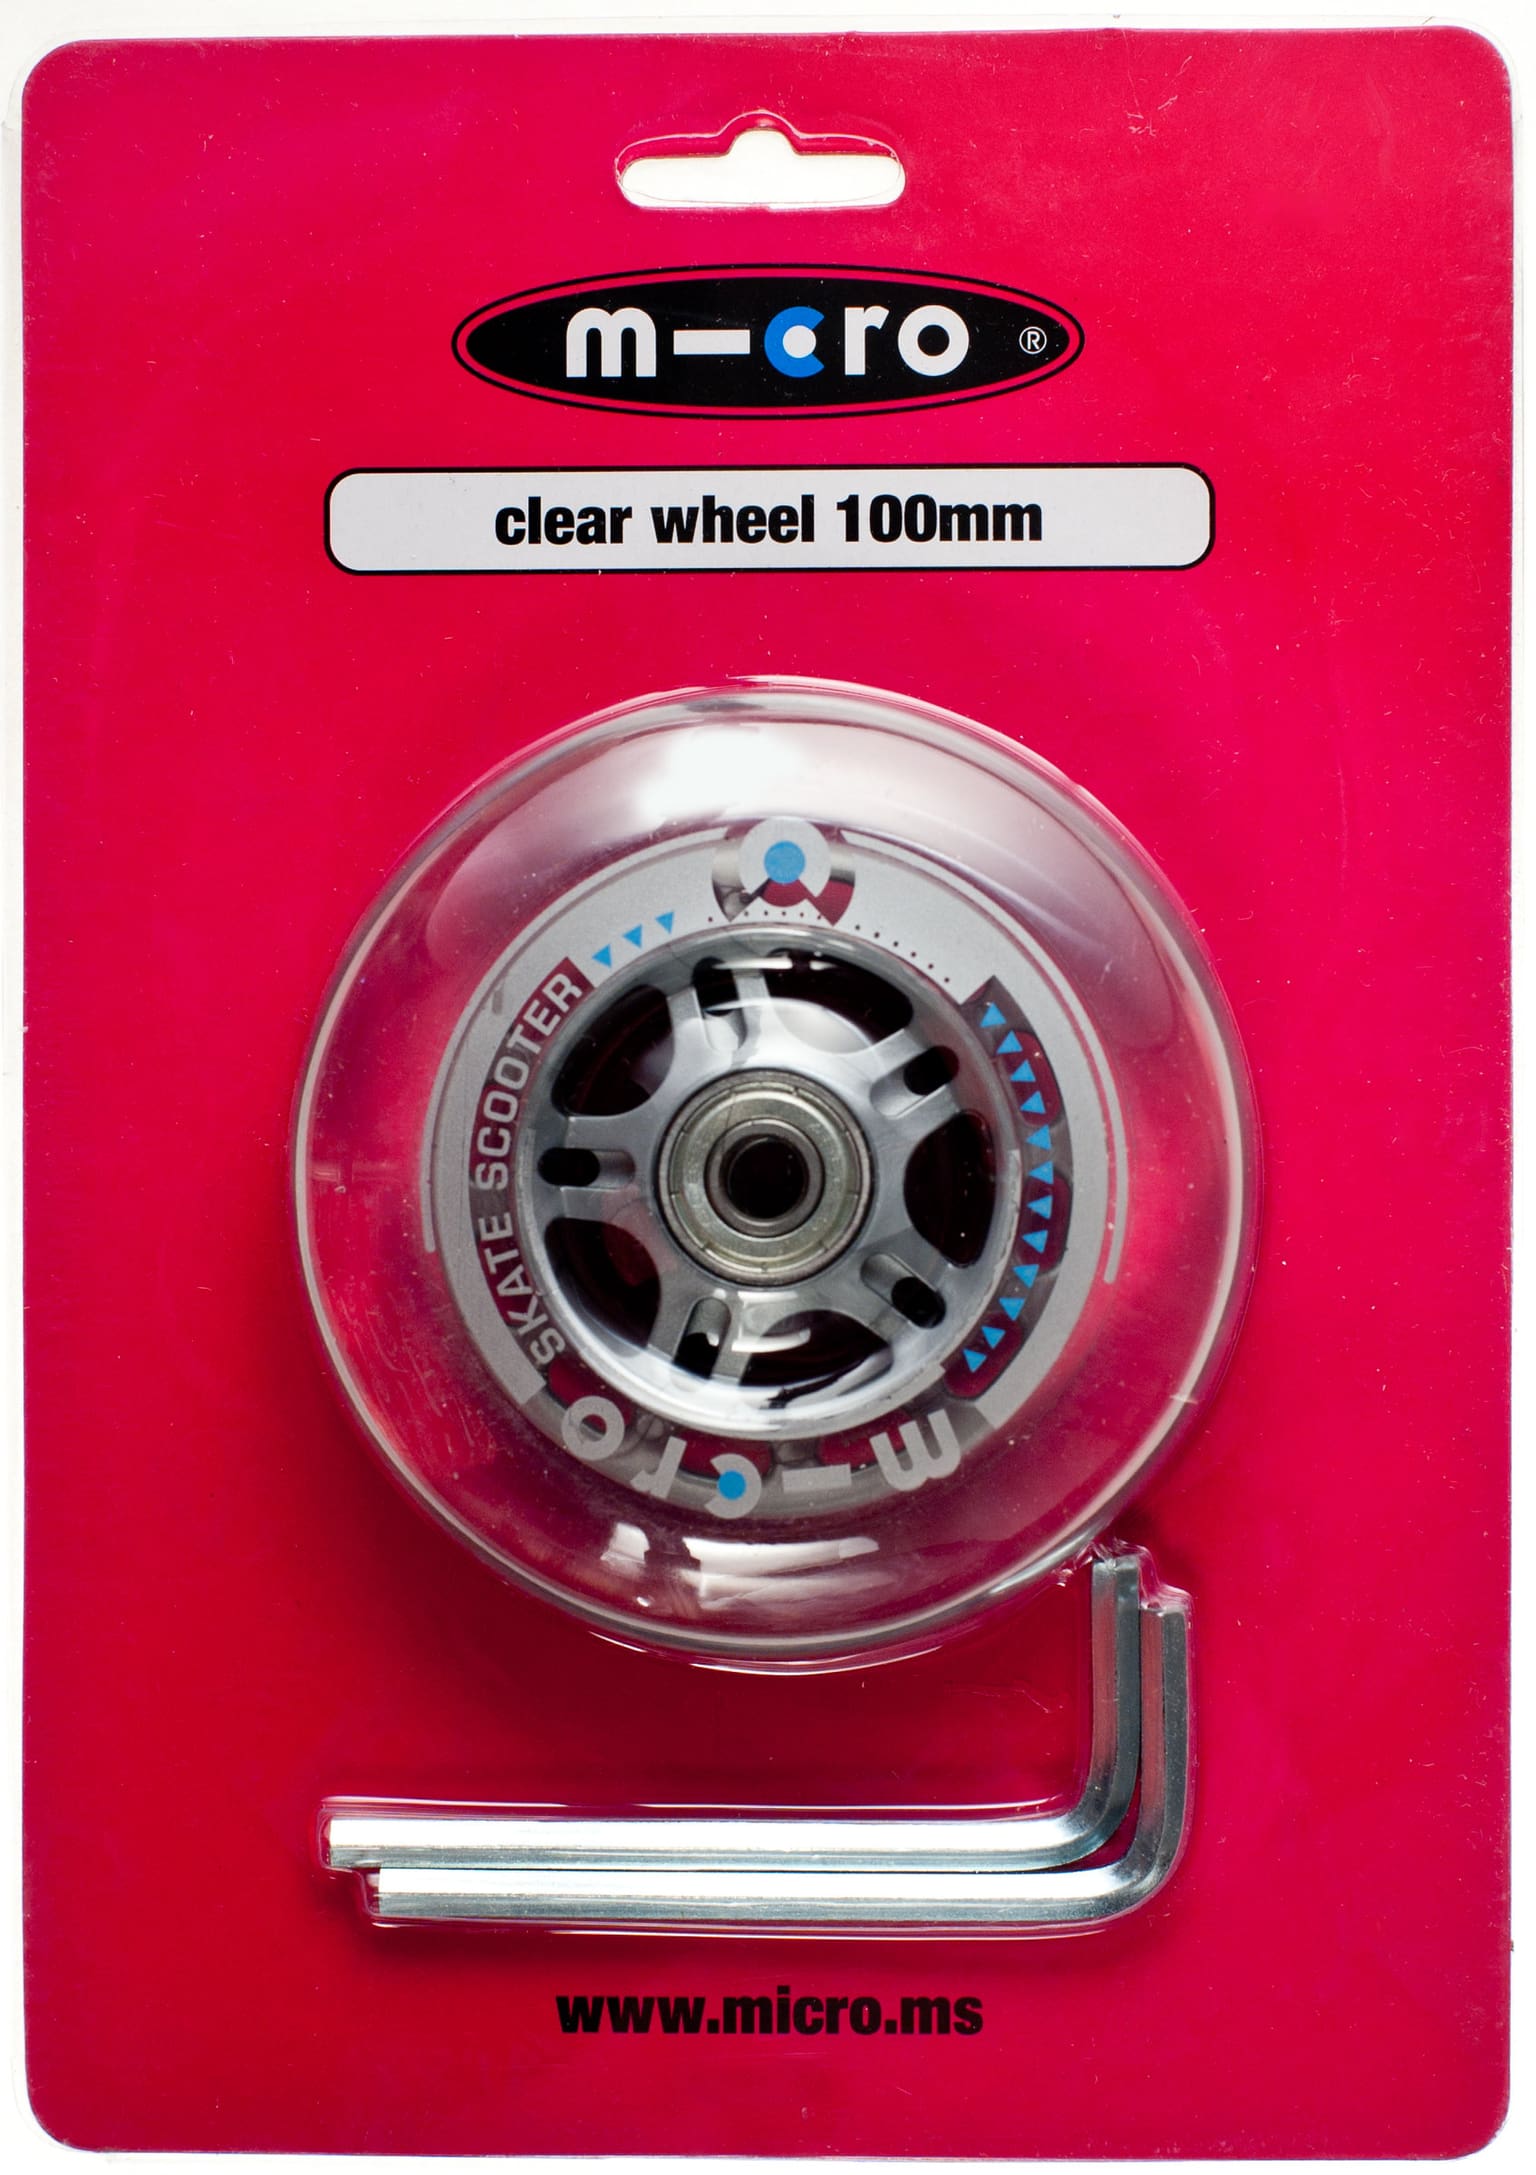 Micro Micro Ruote monopattino 100 mm Ruote per monopattini 1